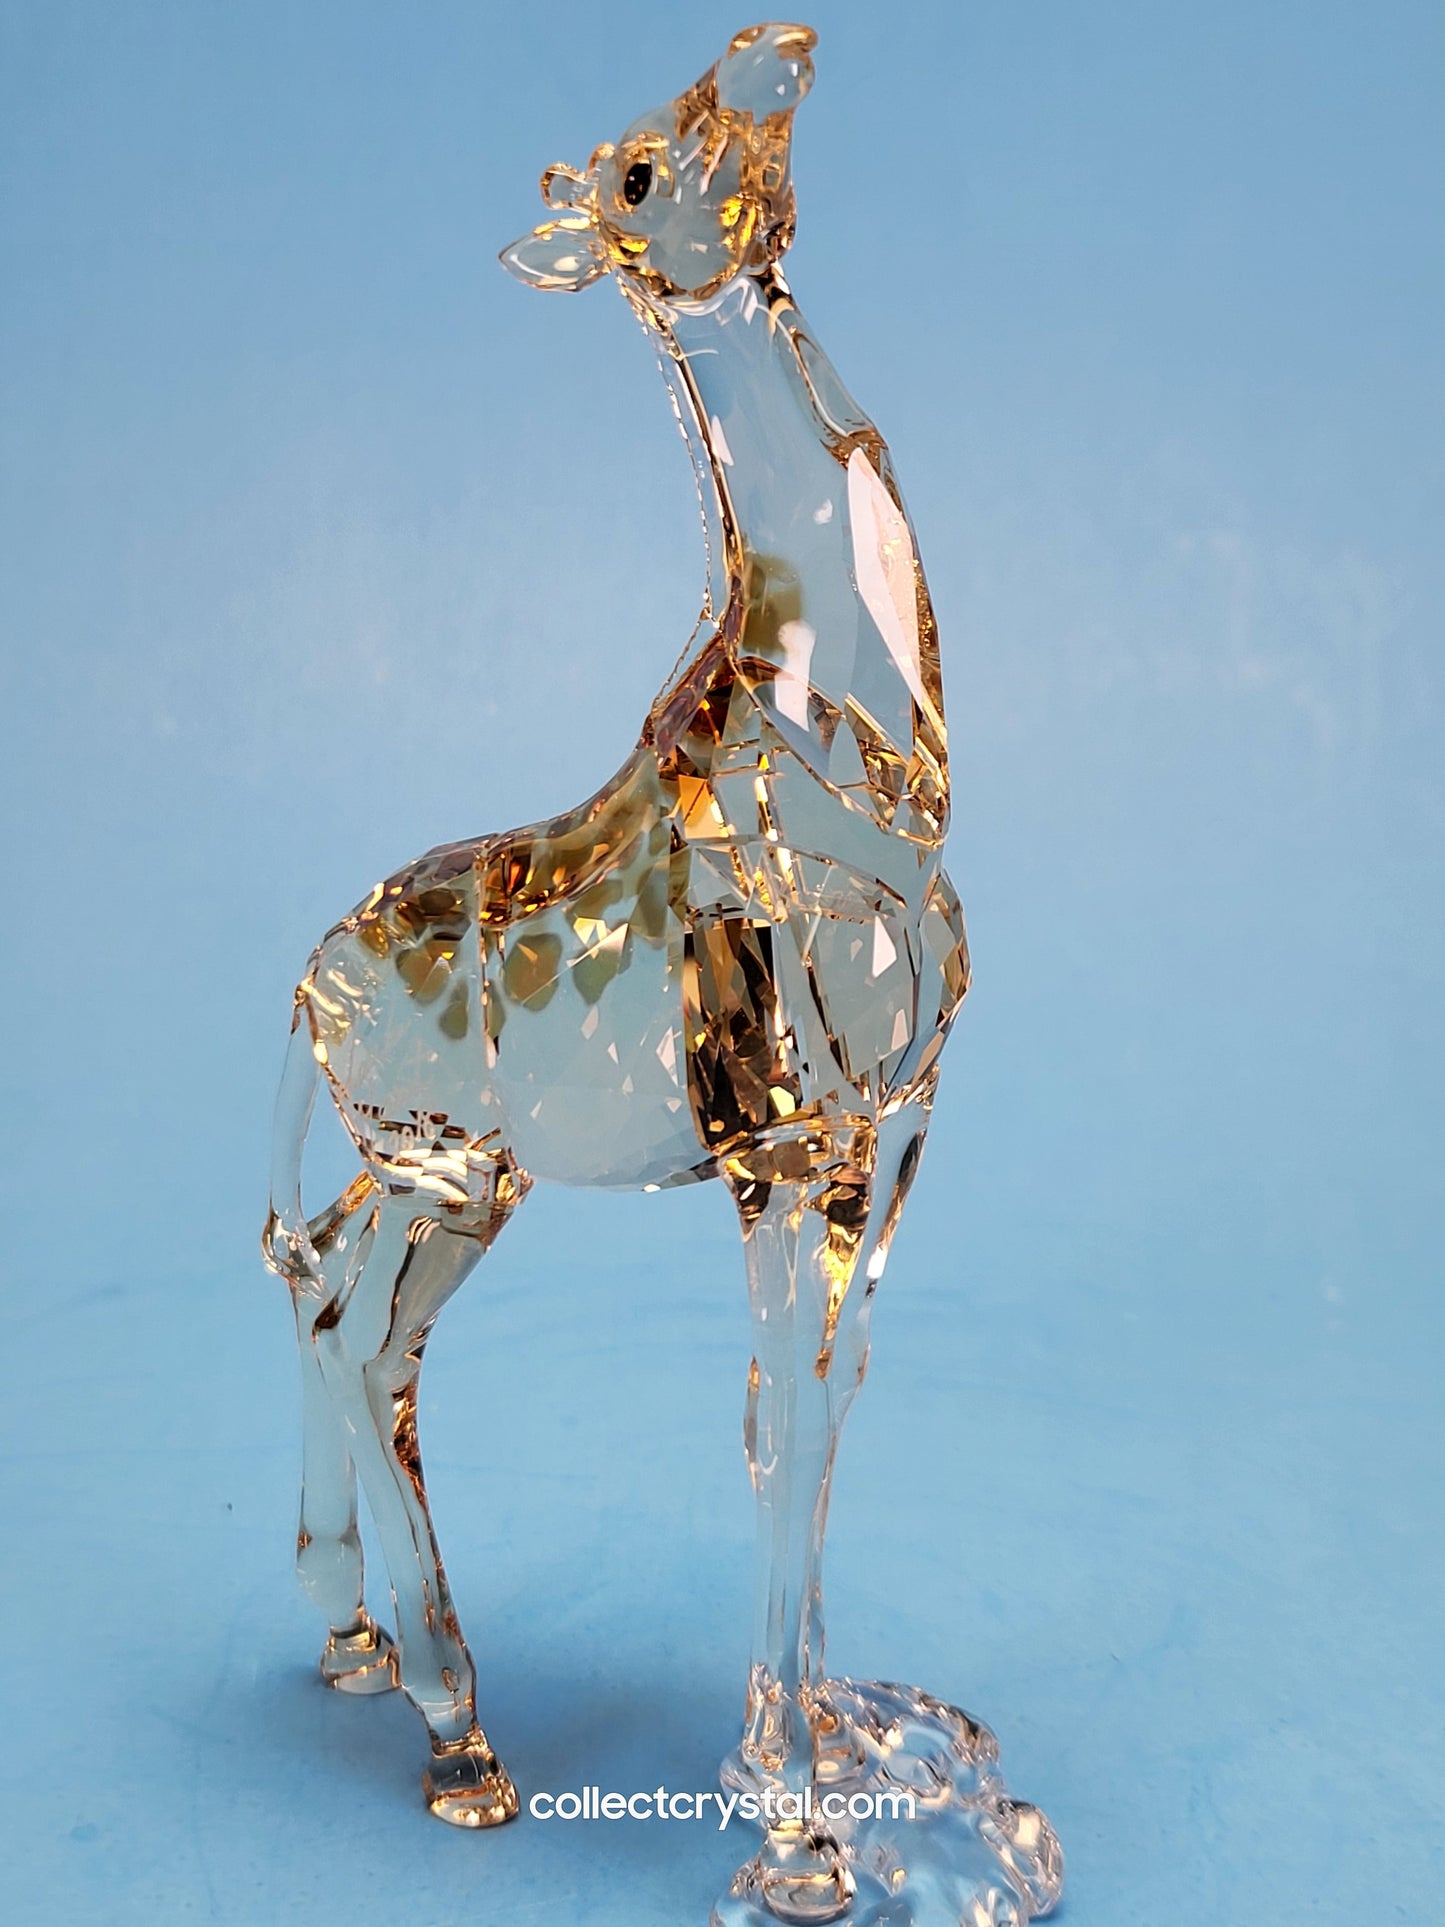 MUDIWA GIRAFFE Companion Baby 2018 Annual Edition 530215 giraffe